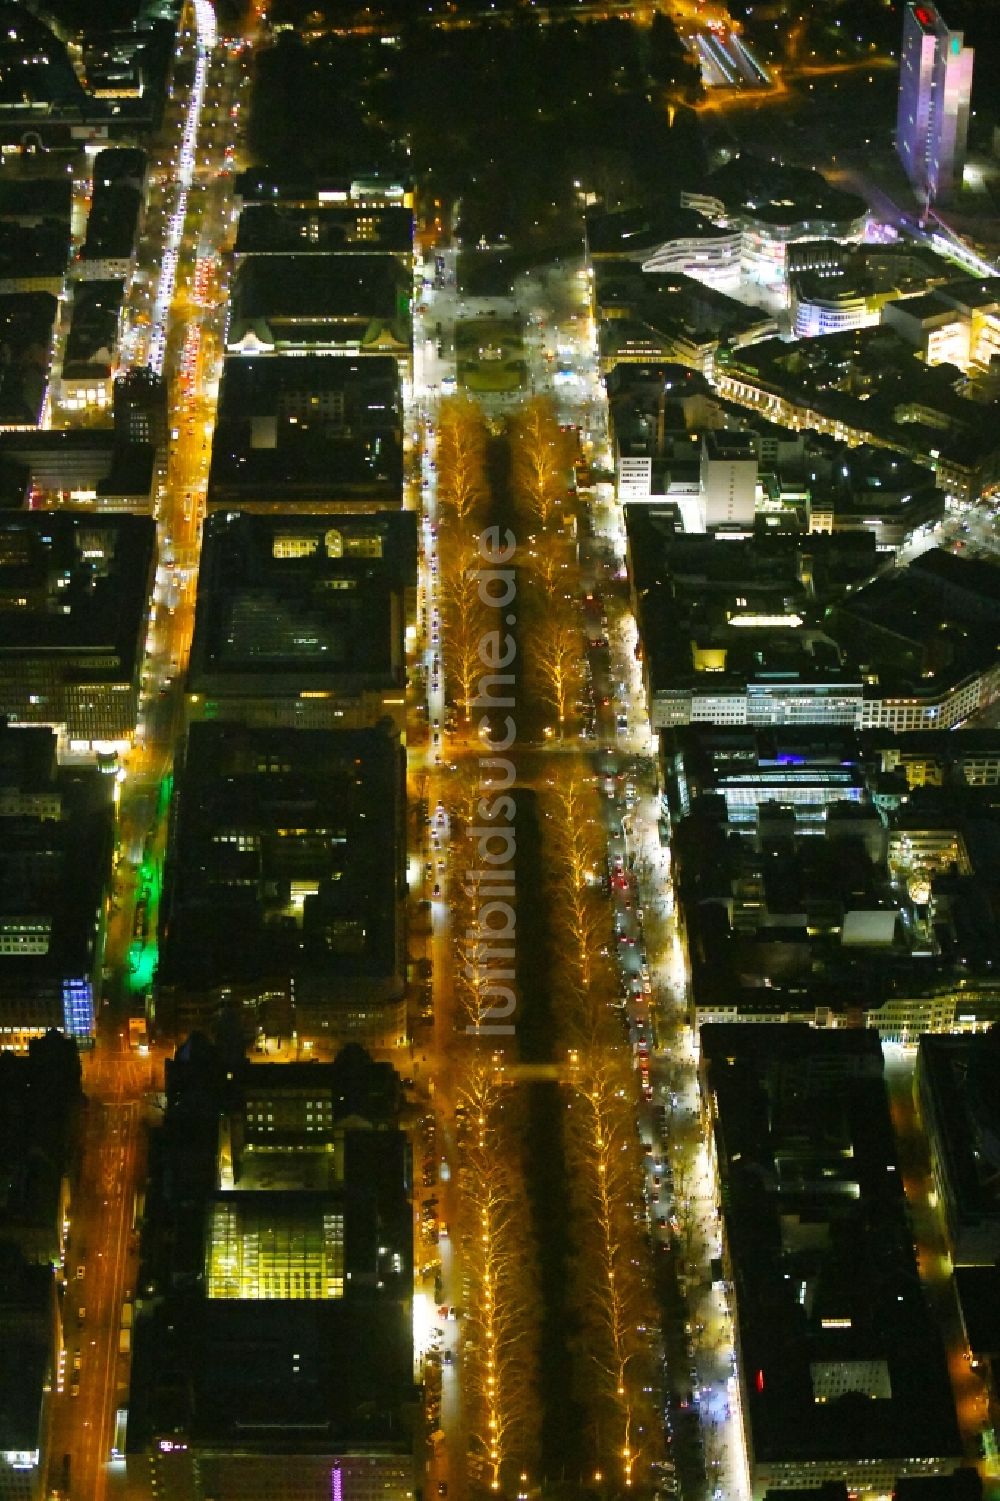 Nachtluftbild Düsseldorf - Nachtluftbild Straßenführung der bekannten Flaniermeile und Einkaufsstraße Königsallee im Ortsteil Stadtmitte in Düsseldorf im Bundesland Nordrhein-Westfalen, Deutschland